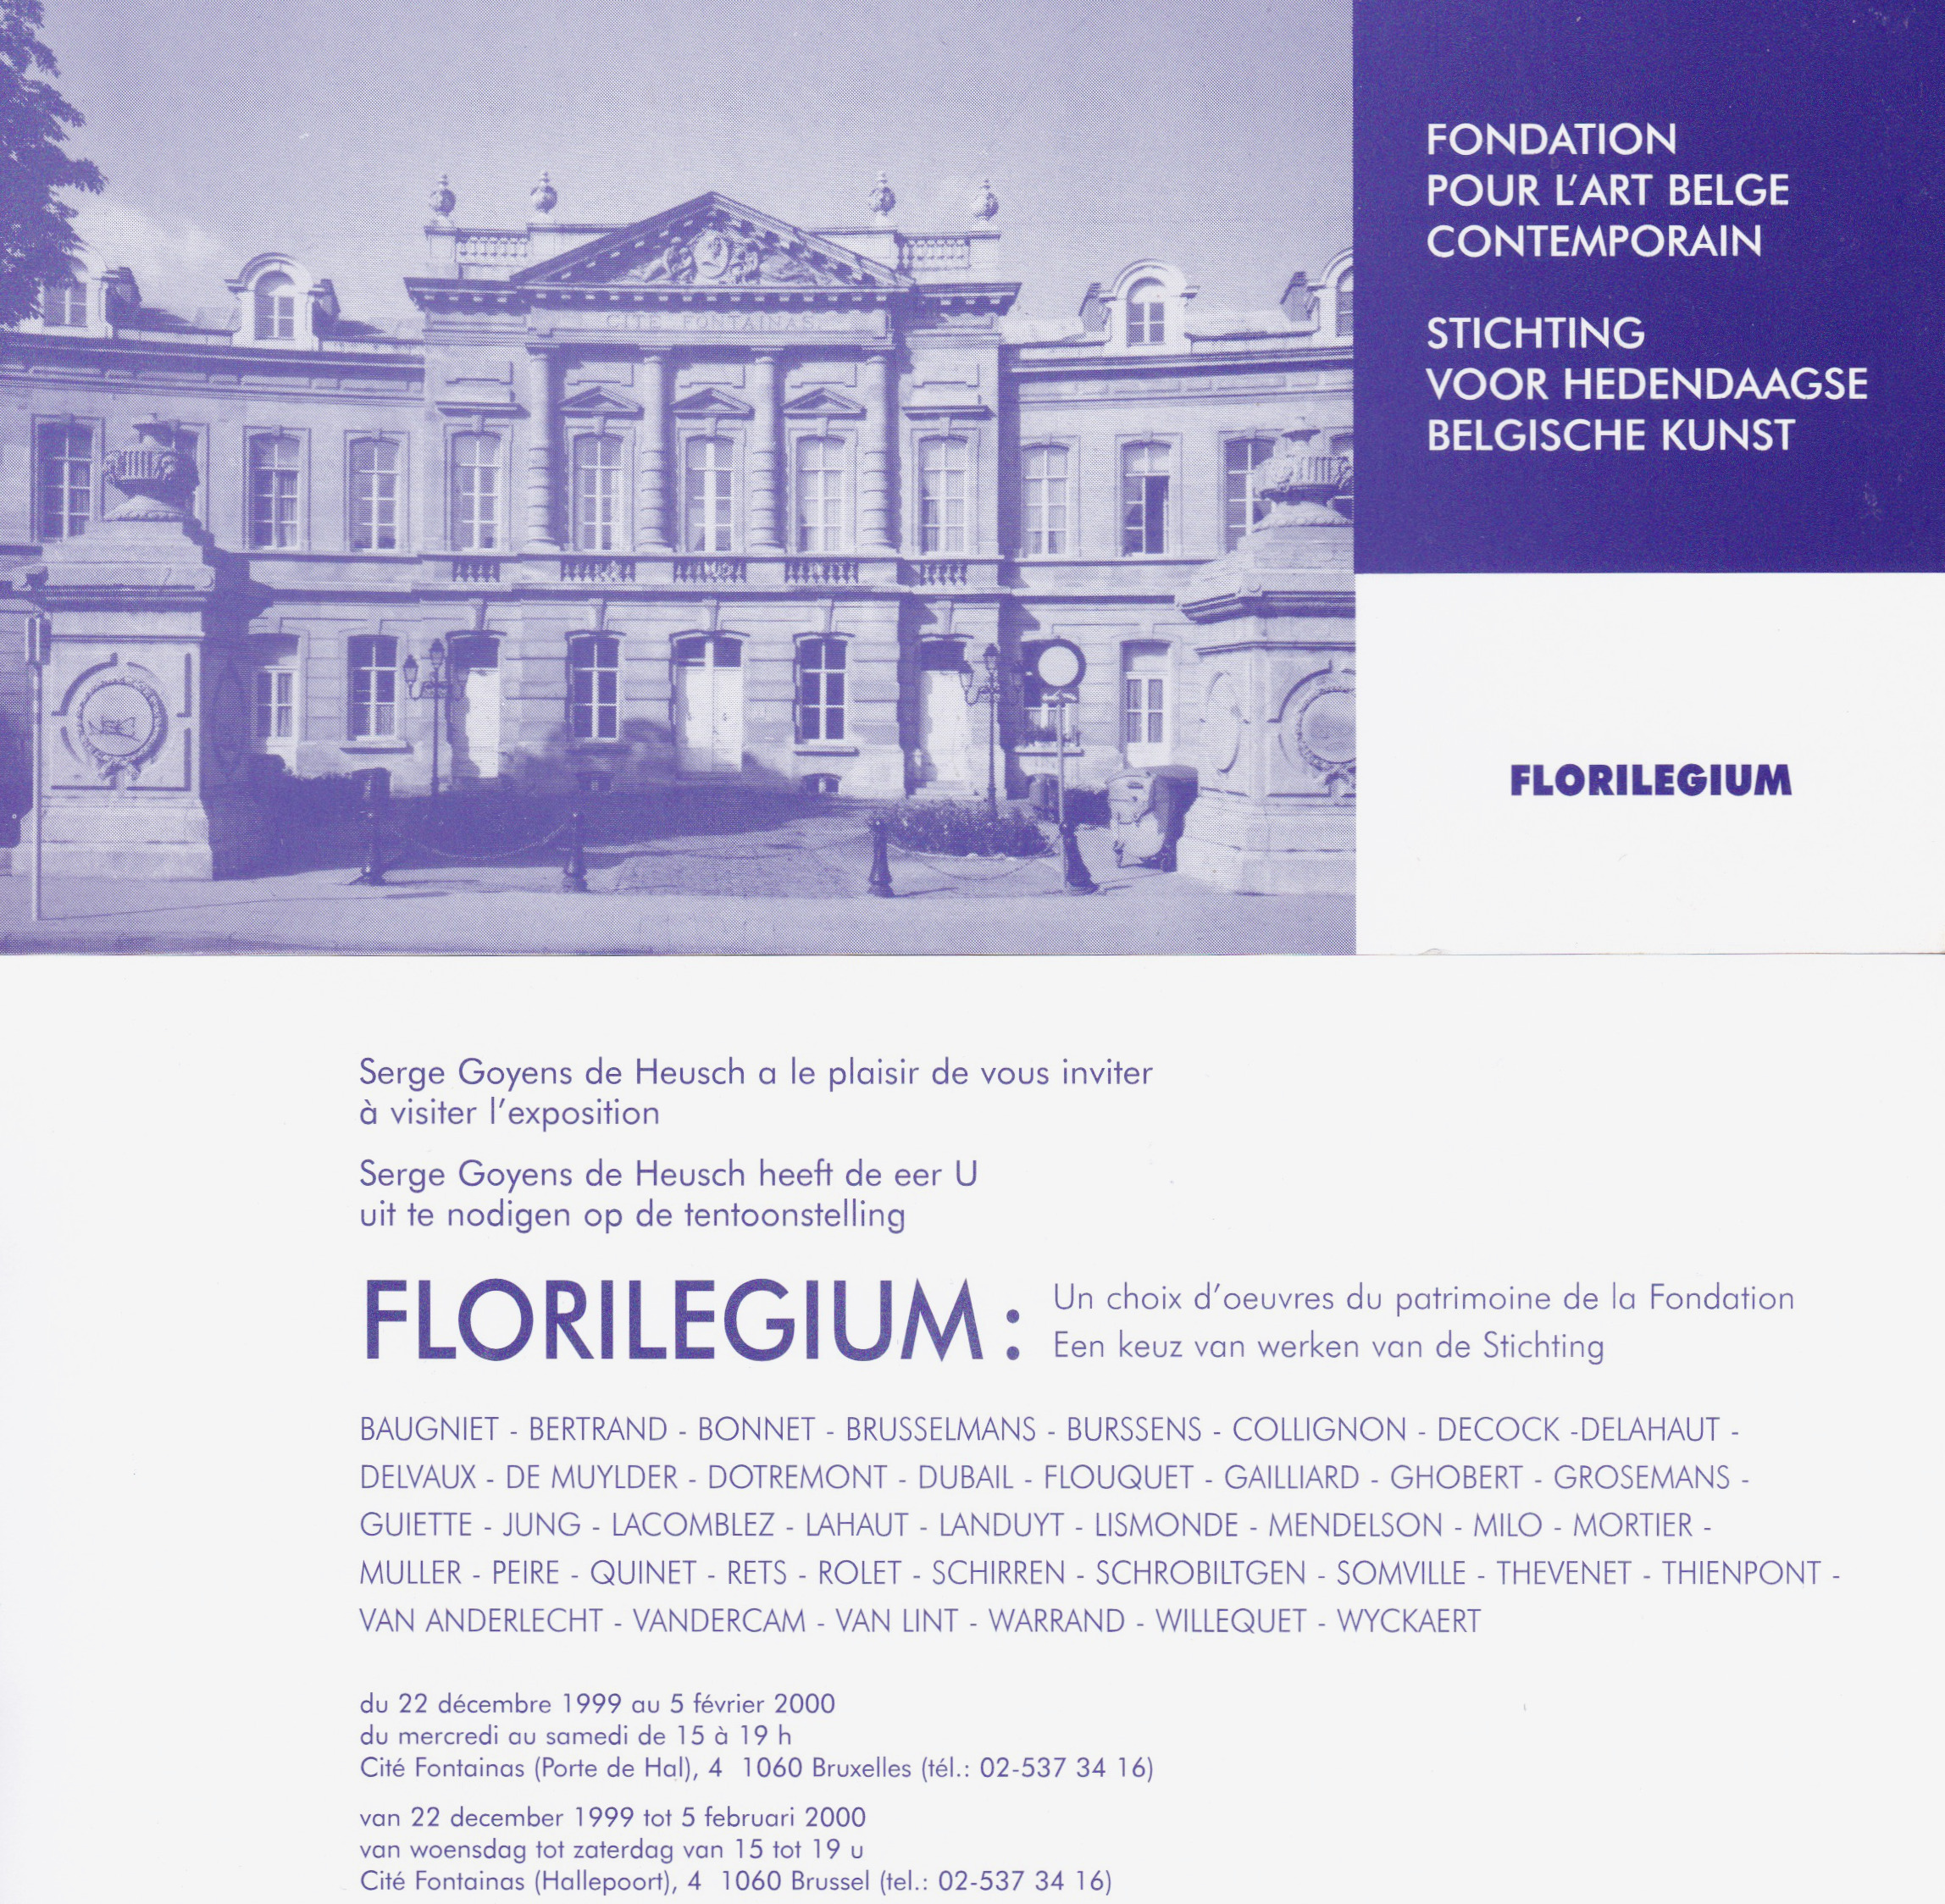 Florilegium, Fondation pour l'art belge contemporain, 1999